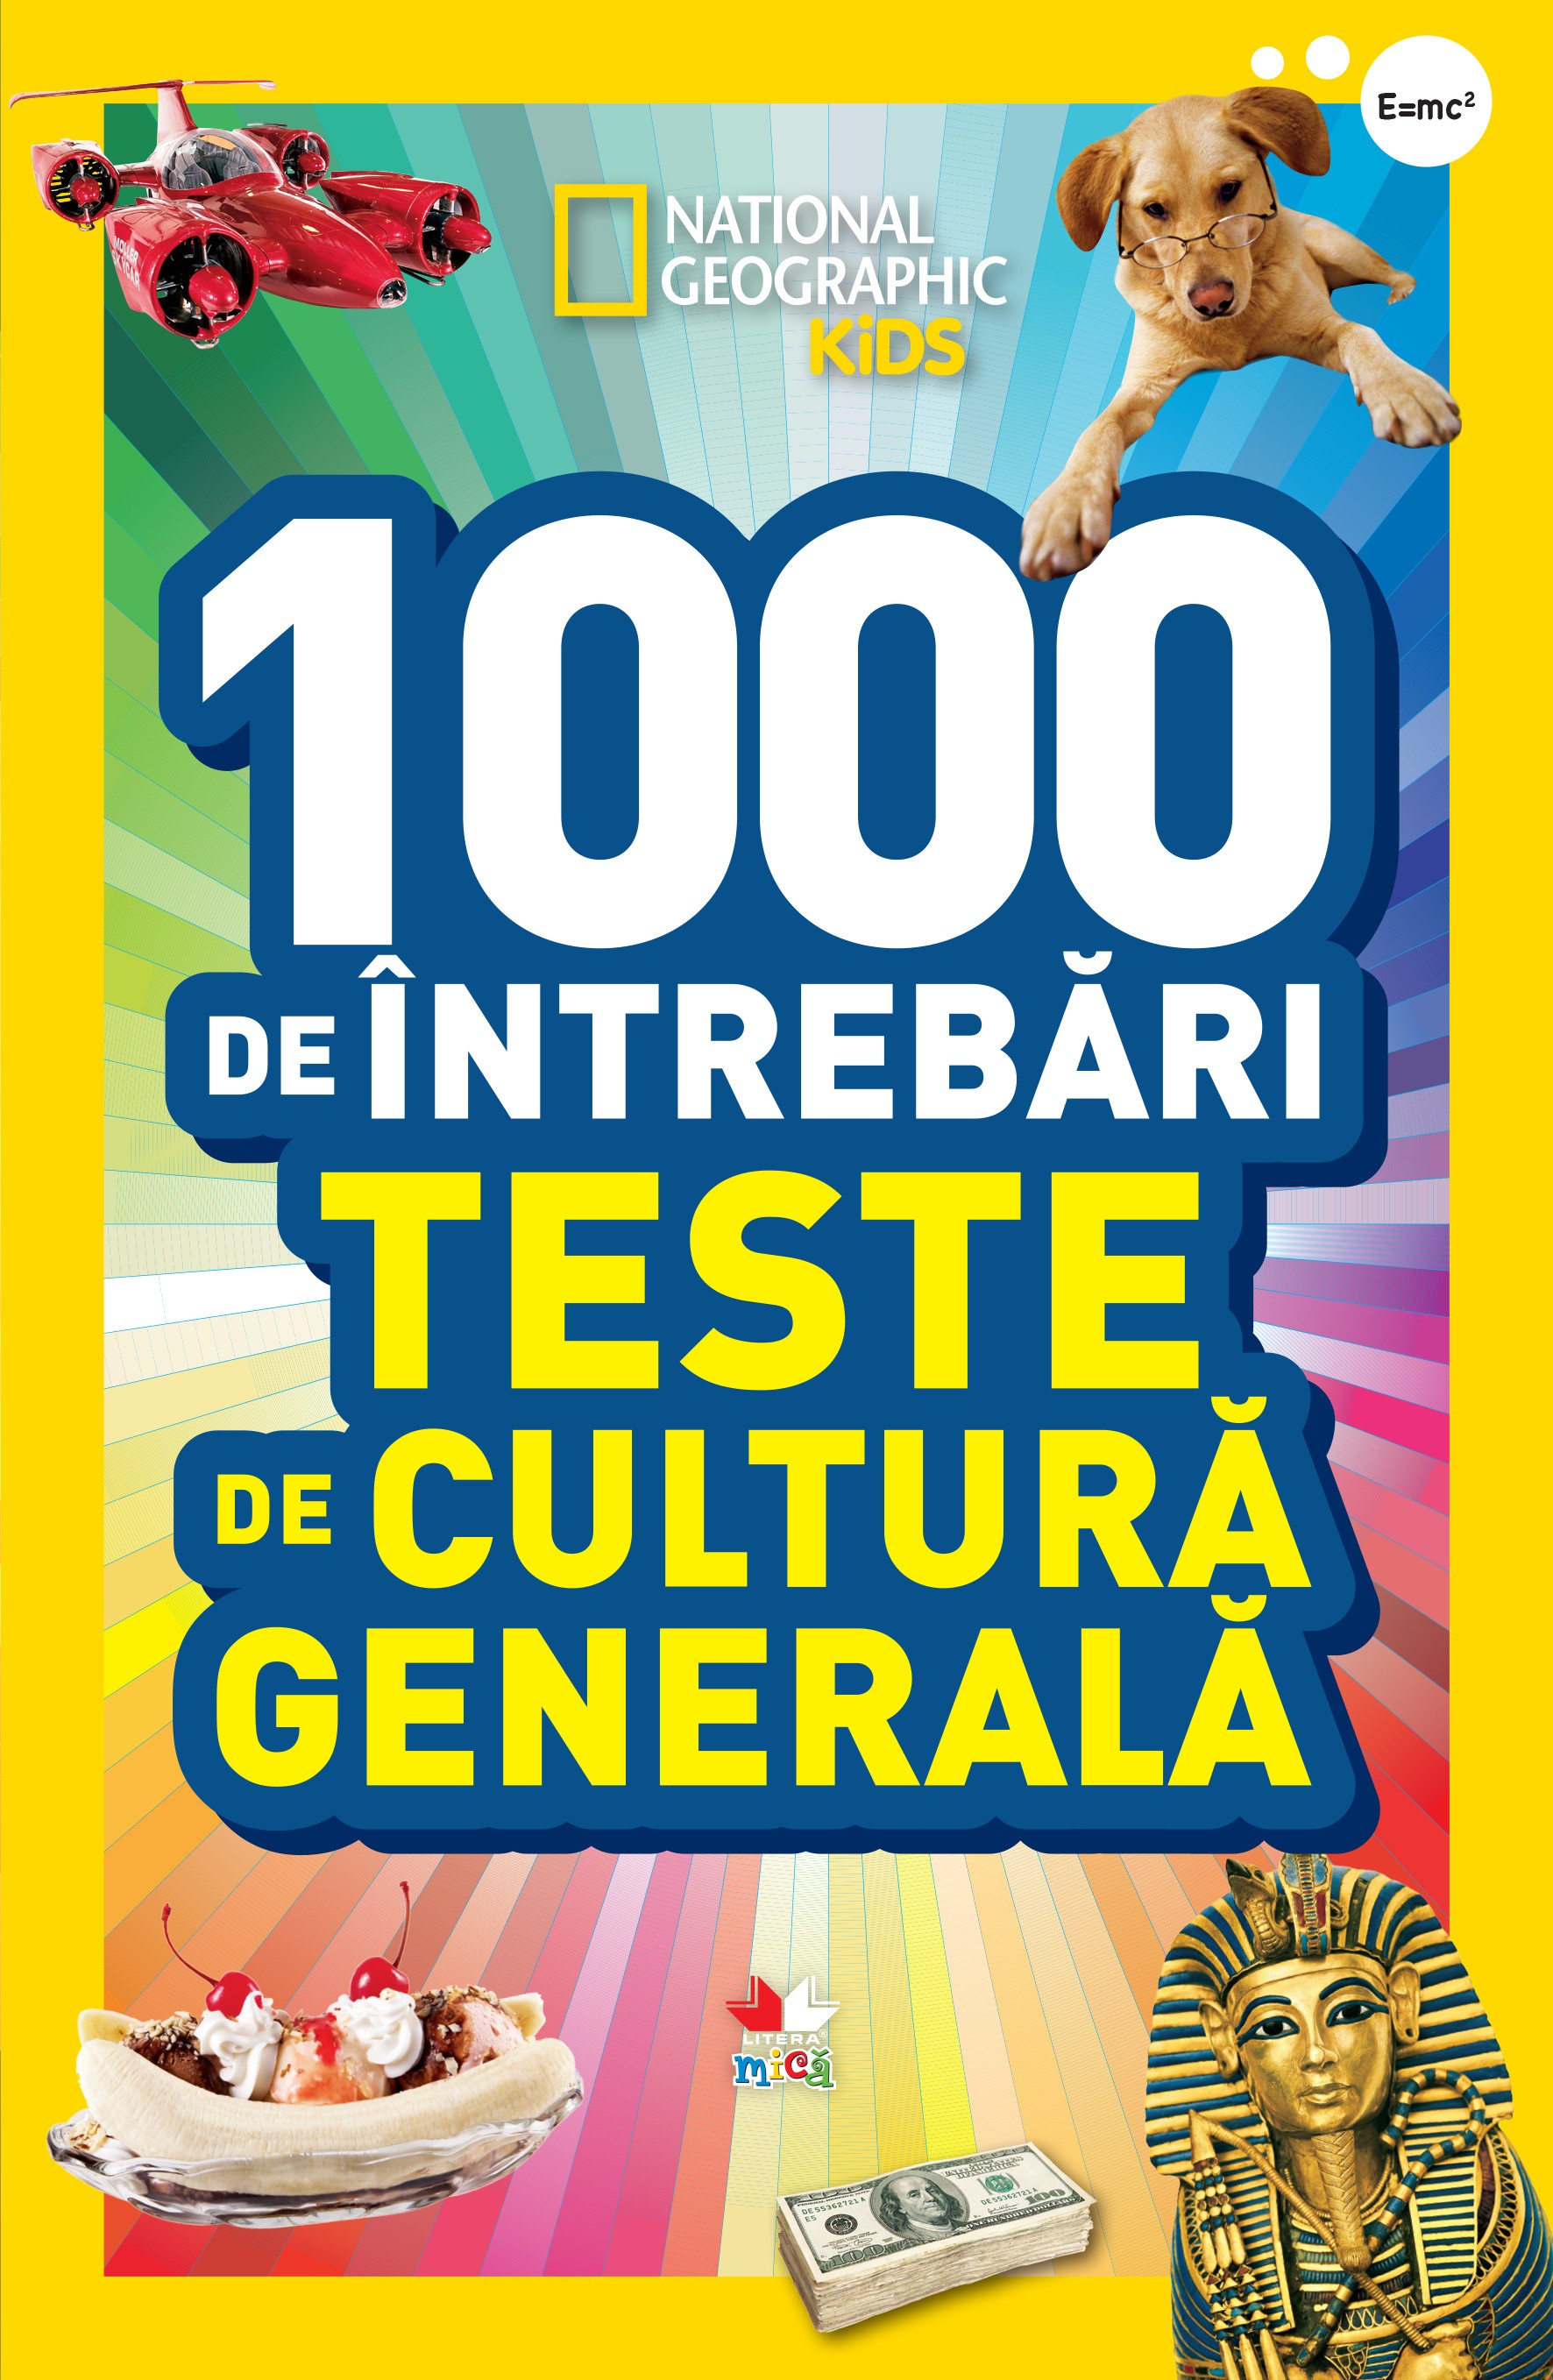 1000 de intrebari de cultura generala - National Geographic Kids